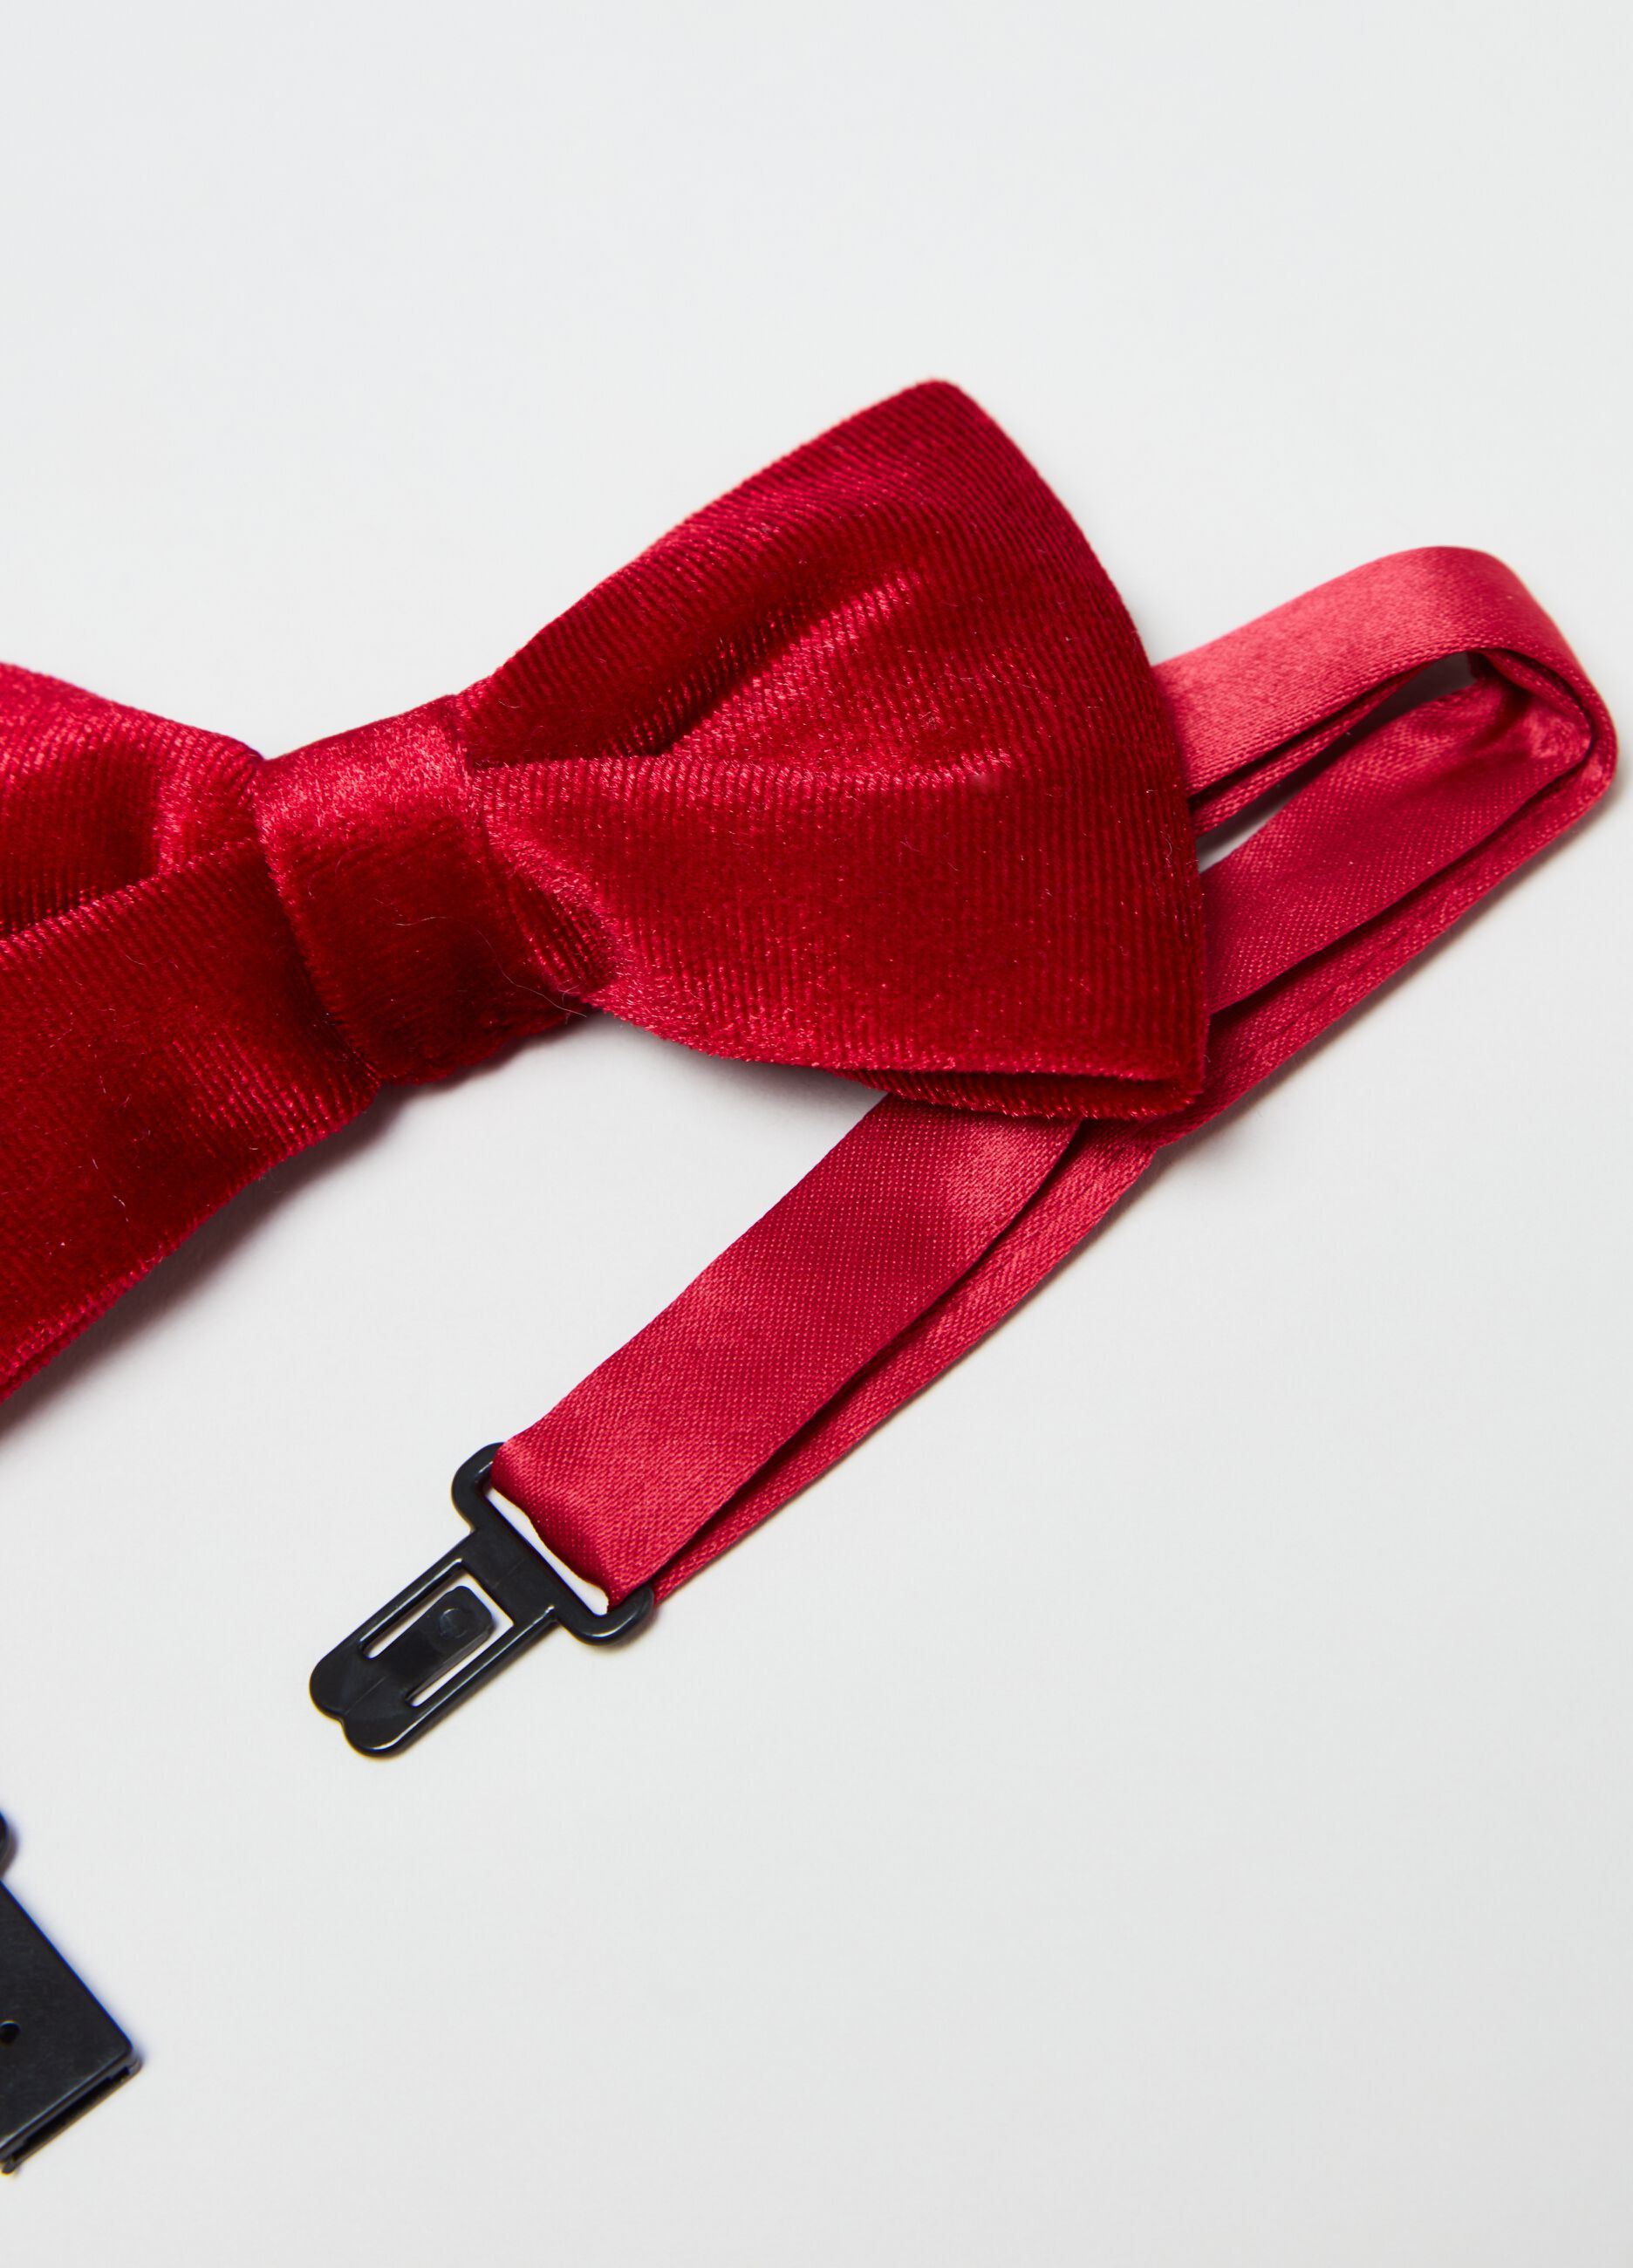 Velvet bow tie